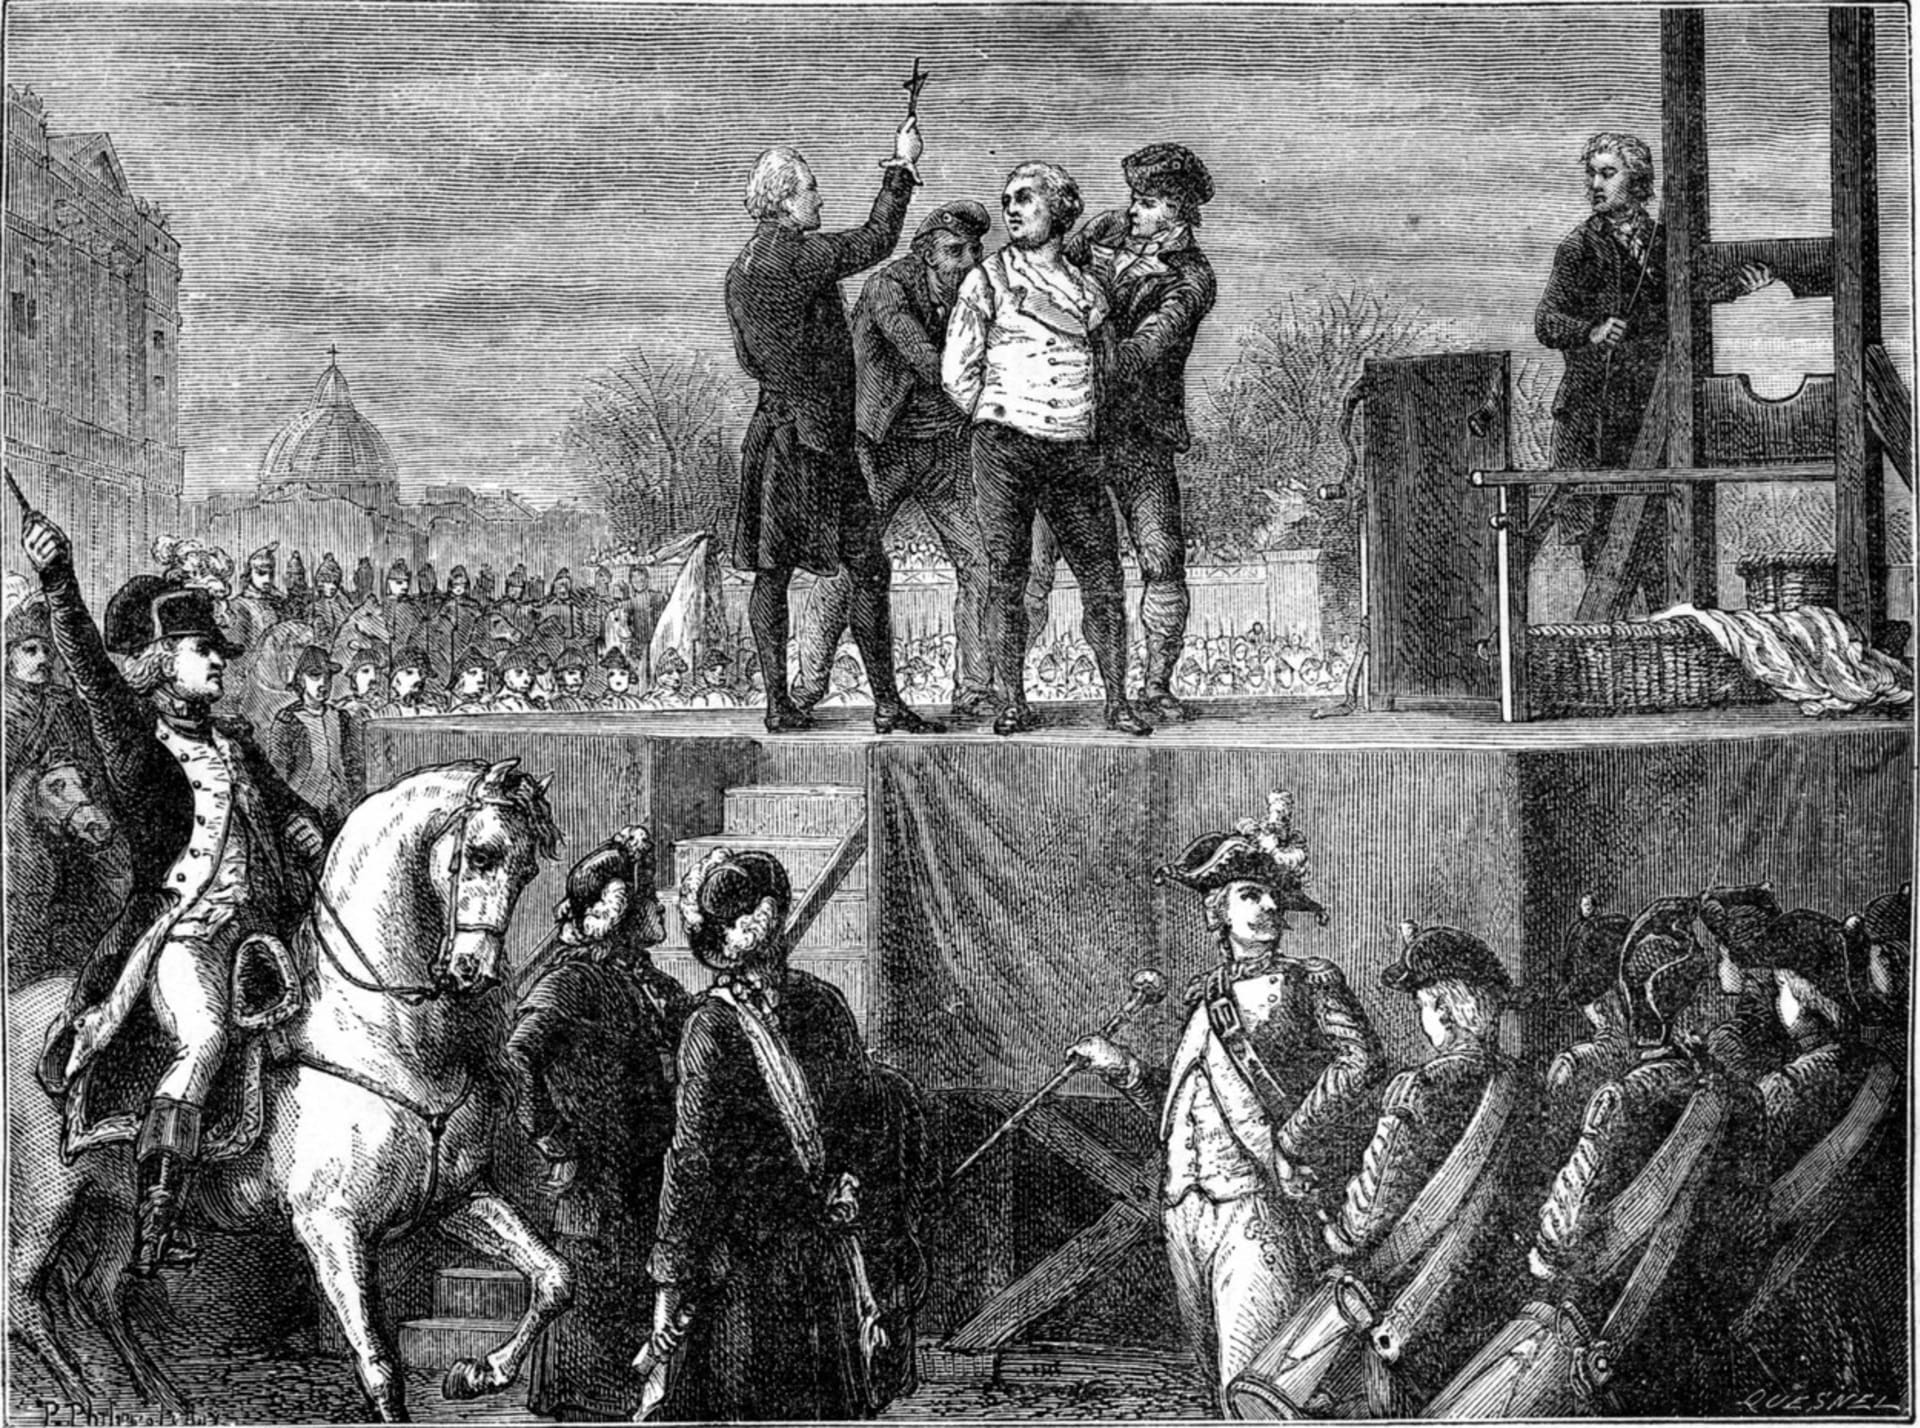 Poprava bývalého krále Ludvíka XVI. proběhla v Paříži pod gilotinou.